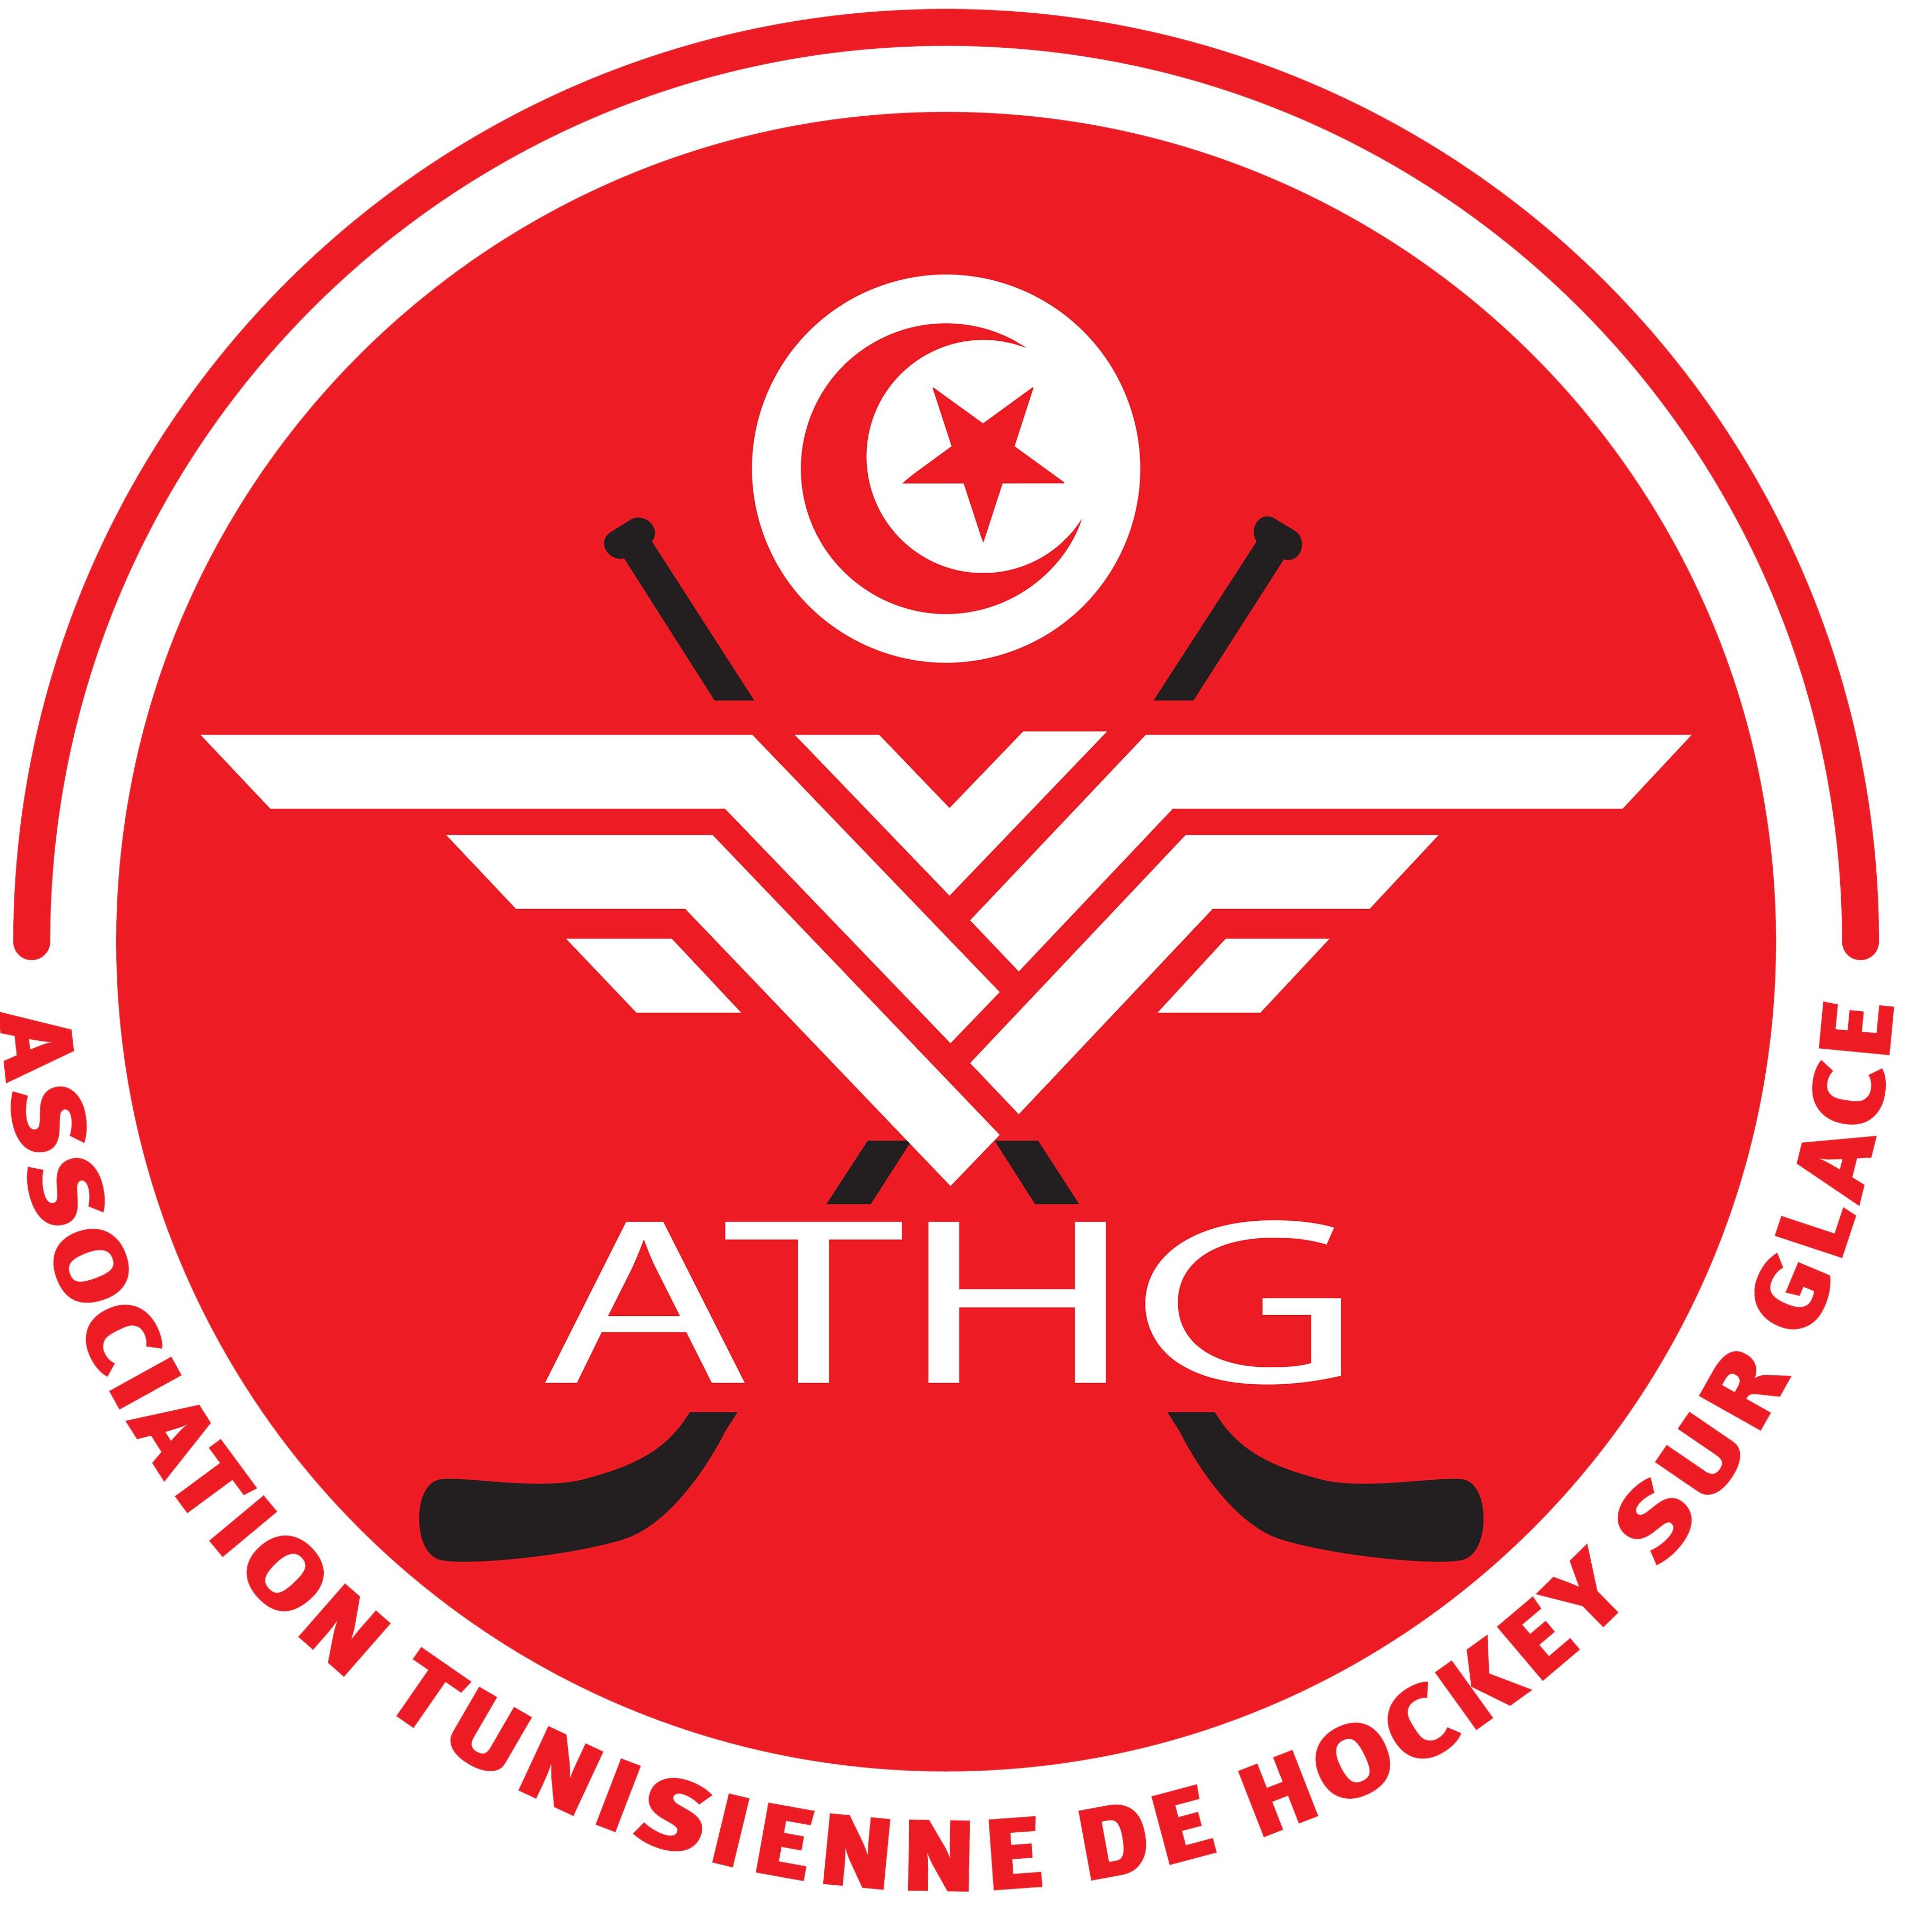 🇹🇳Official account of the Tunisian Ice Hockey association /🇹🇳Compte officiel de l'association tunisienne de hockey sur glace 🏒Champion d'Afrique 2016 #ATHG